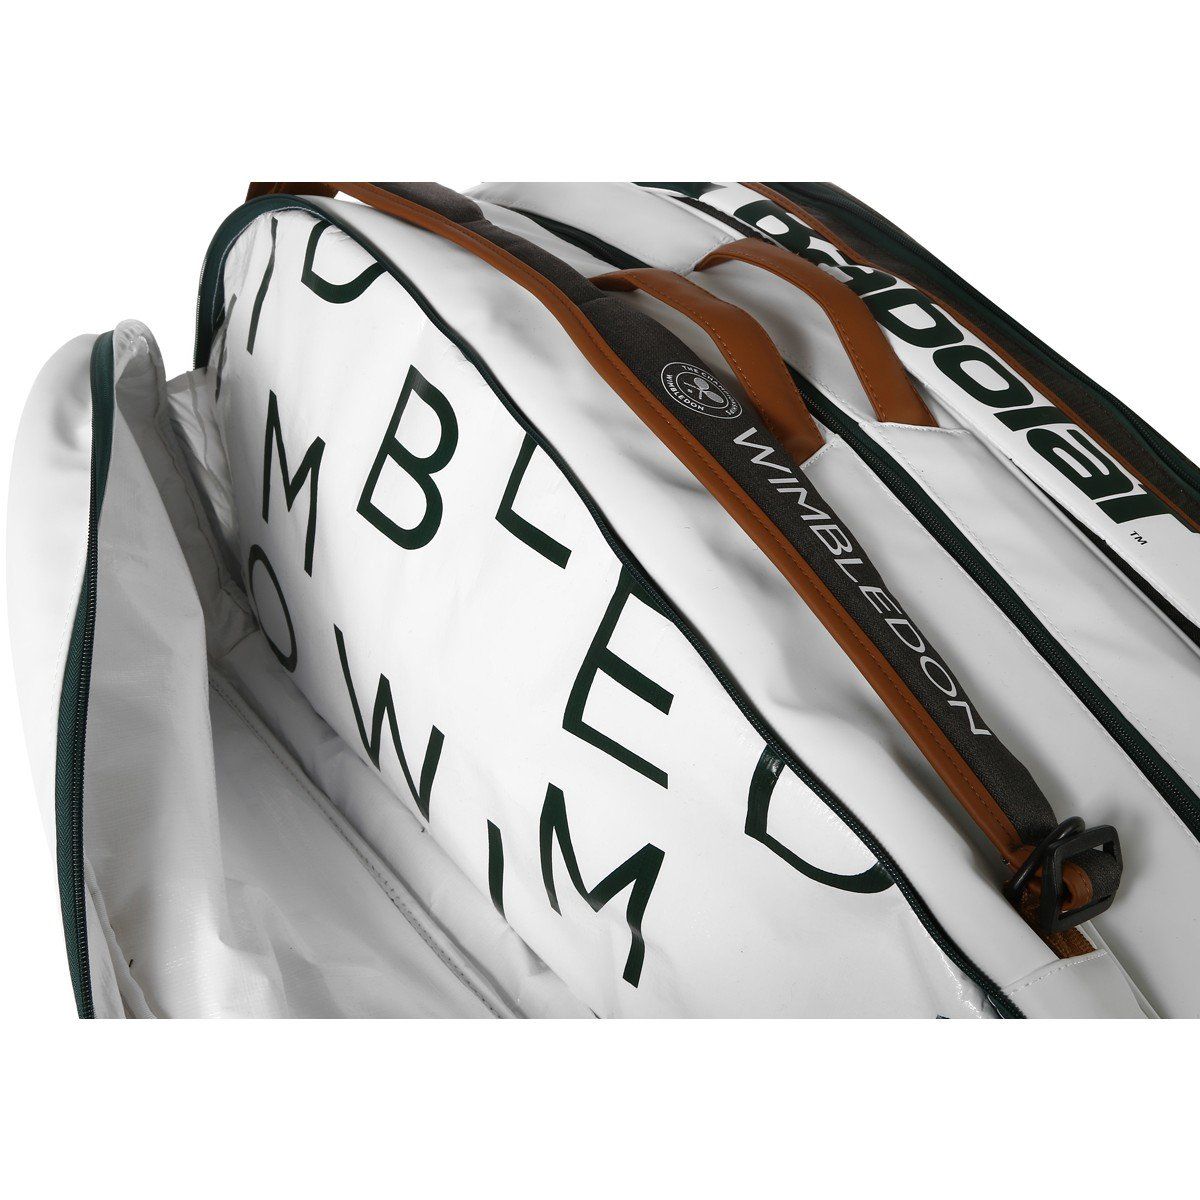 Babolat Rh12 Pure Wimbledon Tennis Bag